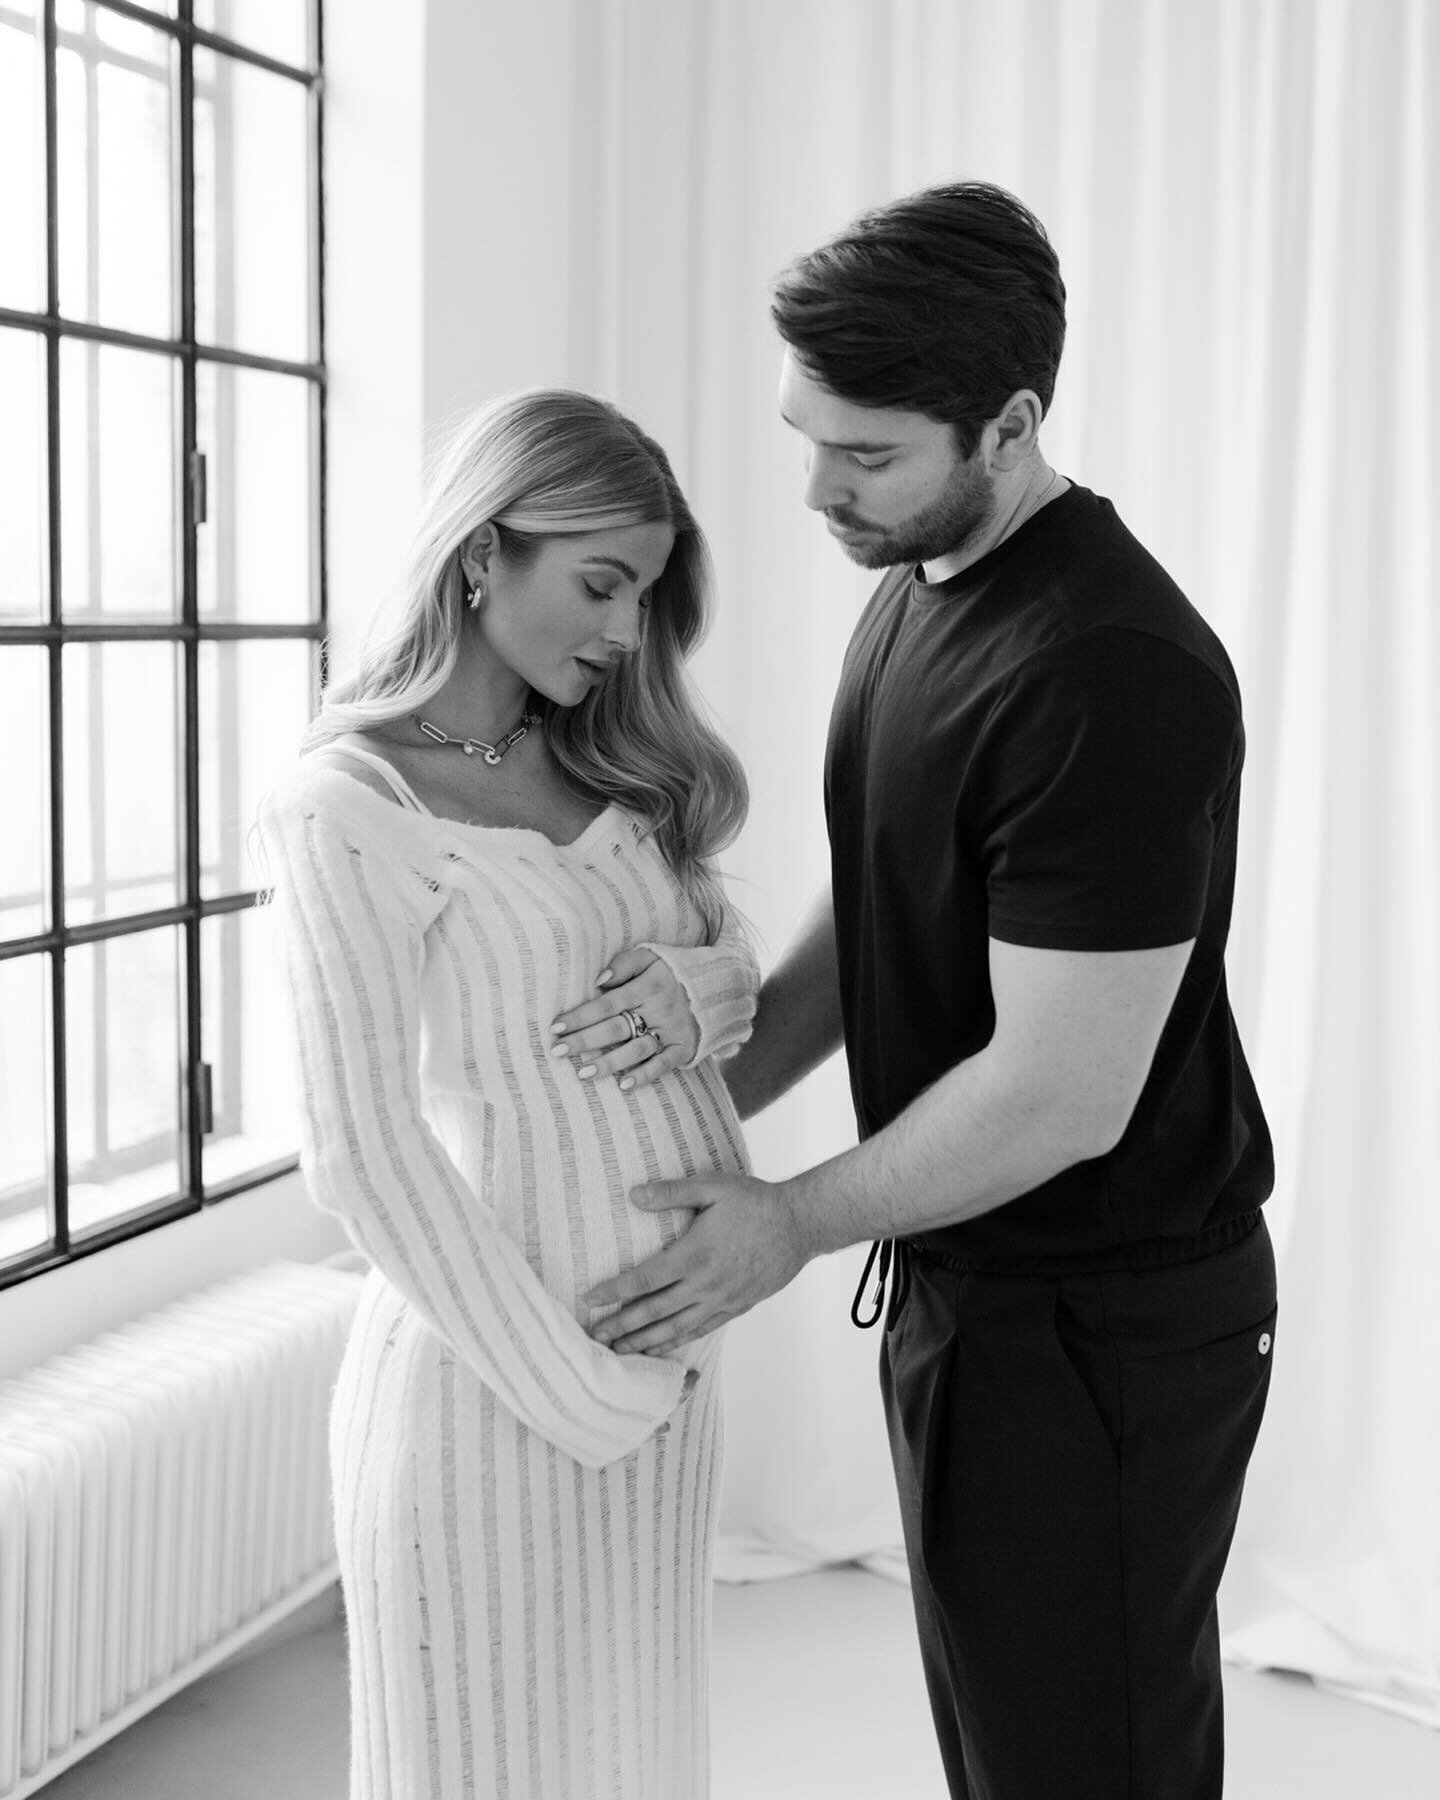 Ein ewiger Favorit 🤍🤍🤍 Jenny & Dennis vor einem Jahr 

#babybauch #babybauchshooting #Schwangerschaft #Schwangerschaftsfotografie #viennaphotographer